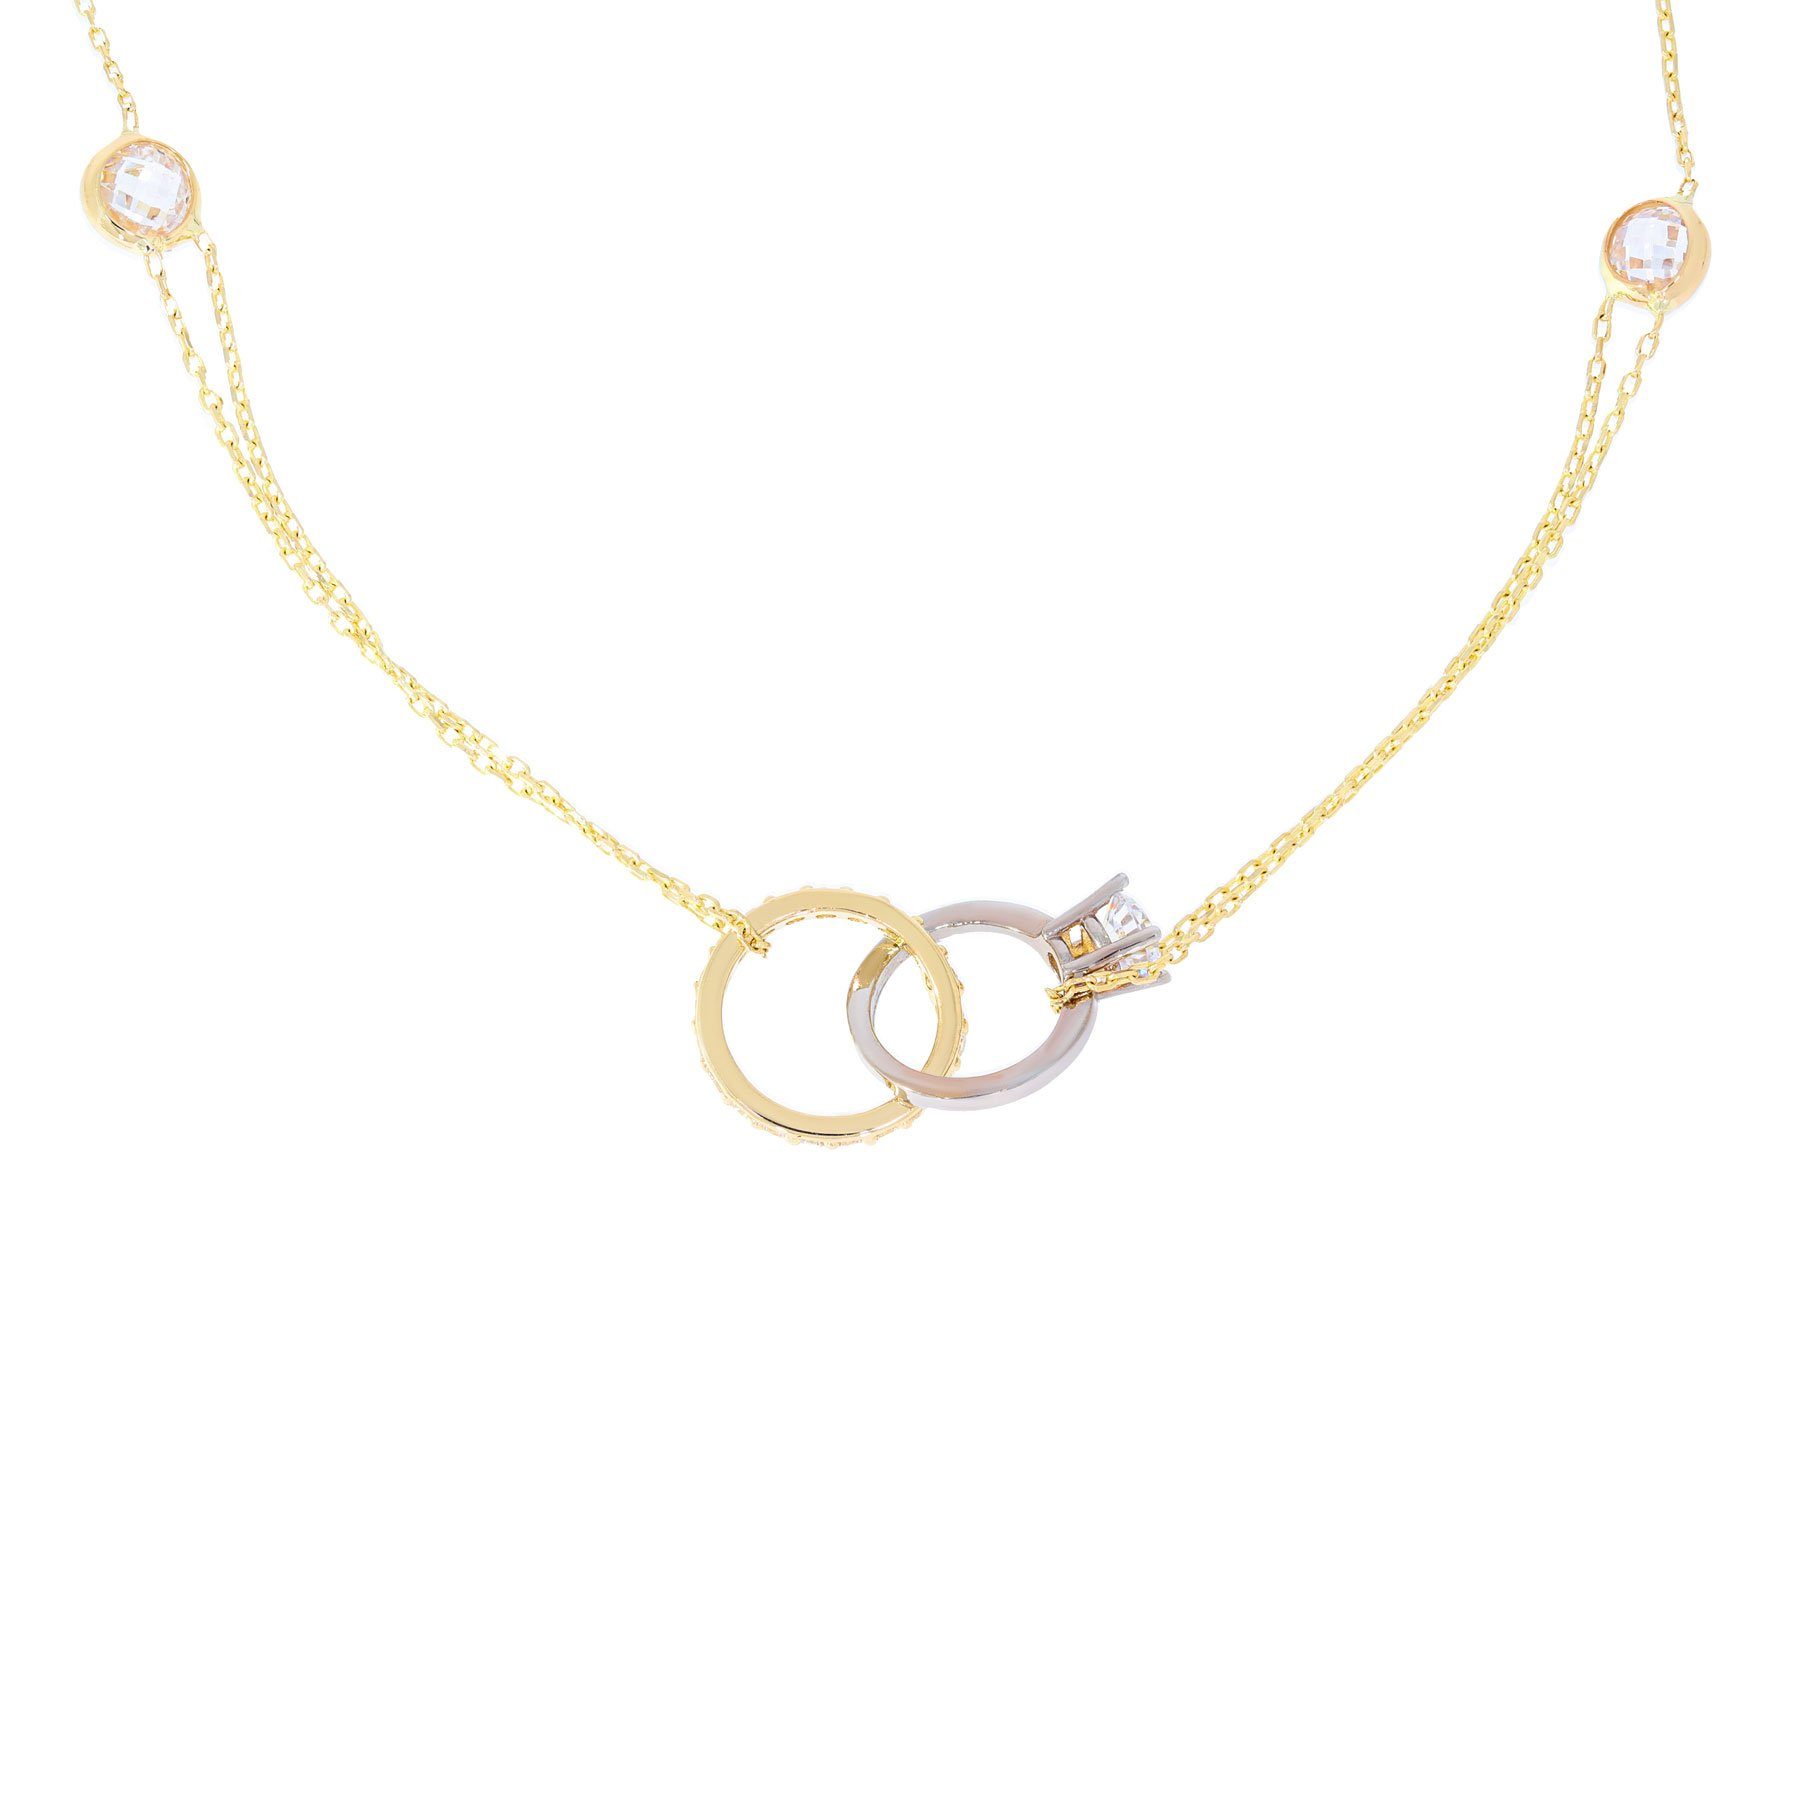 Damen Schmuck Stella-Jewellery Kette mit Anhänger 585 Gold Collierkette Kreis Ring Anhänger Zirkonia (inkl. Etui), Collierkette 